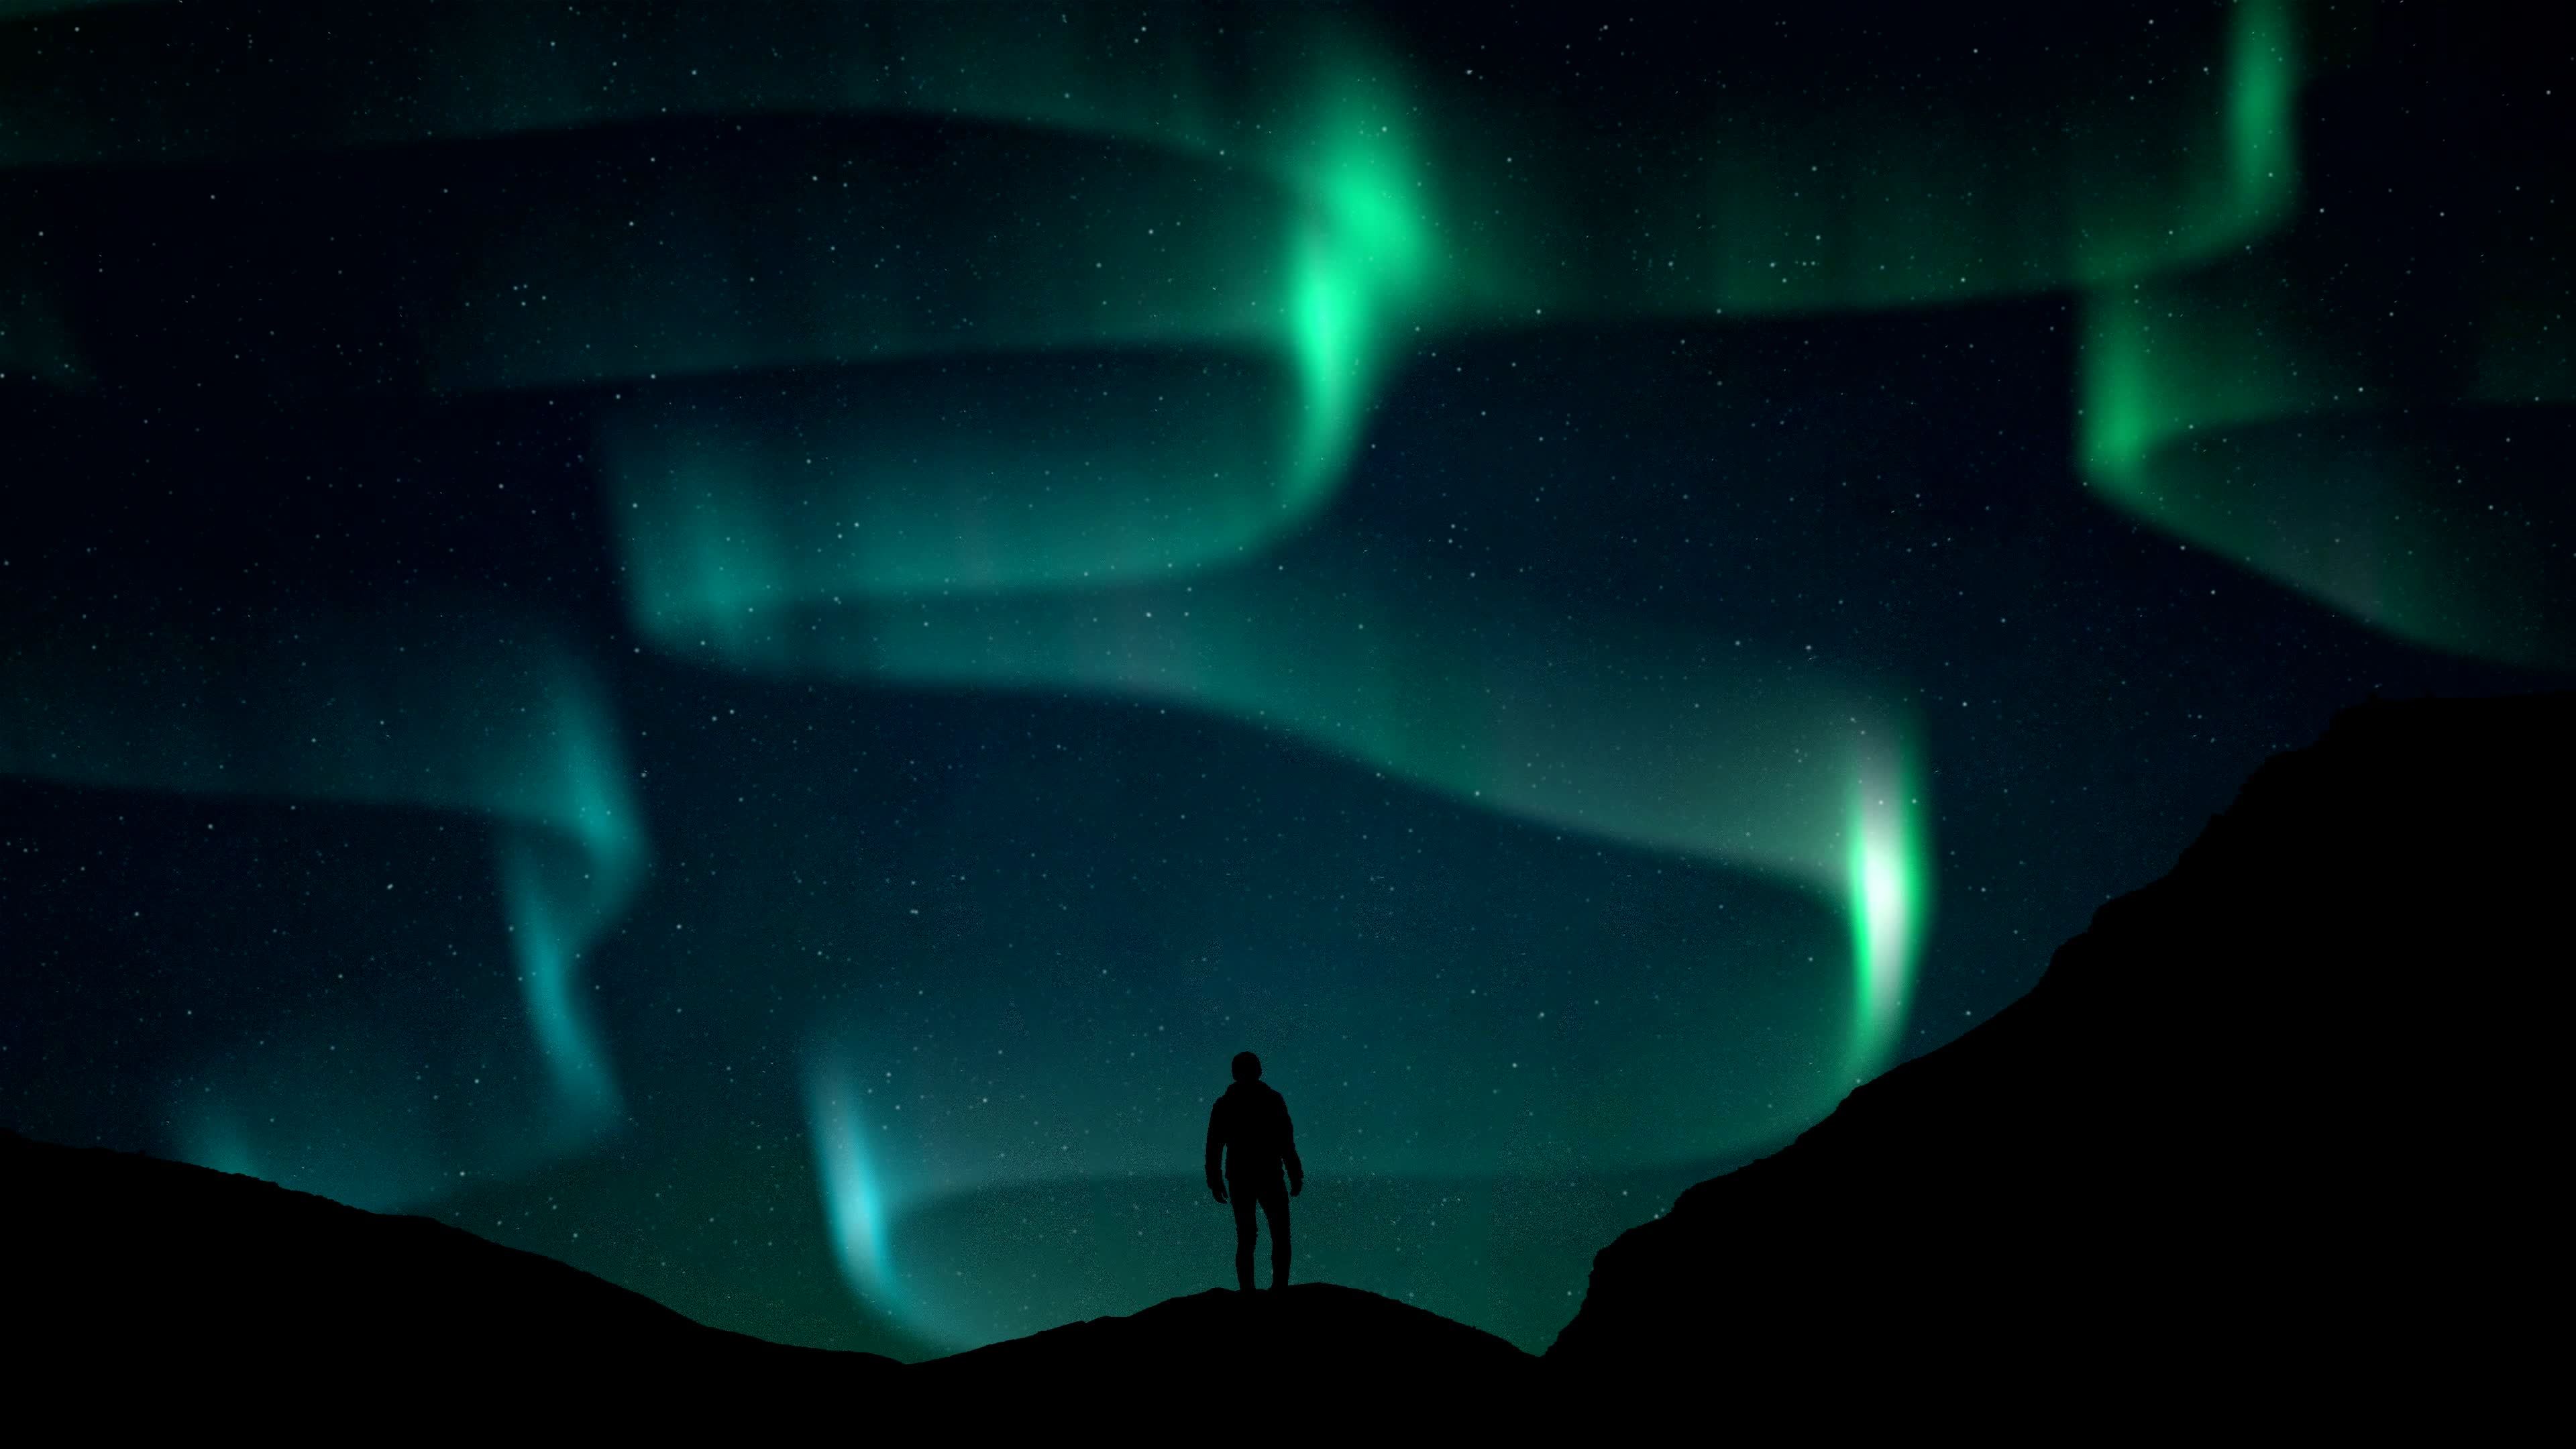 Bắc cực ánh sáng phía bắc người đứng đen đ silhouette: Những bức ảnh đại diện cho bắc cực ánh sáng là một trong những đẹp nhất trên thế giới. Với hình ảnh người đứng đen đầy bí ẩn trước bức tường sáng chói, bạn sẽ được trải nghiệm một cảm giác thú vị và mới lạ.